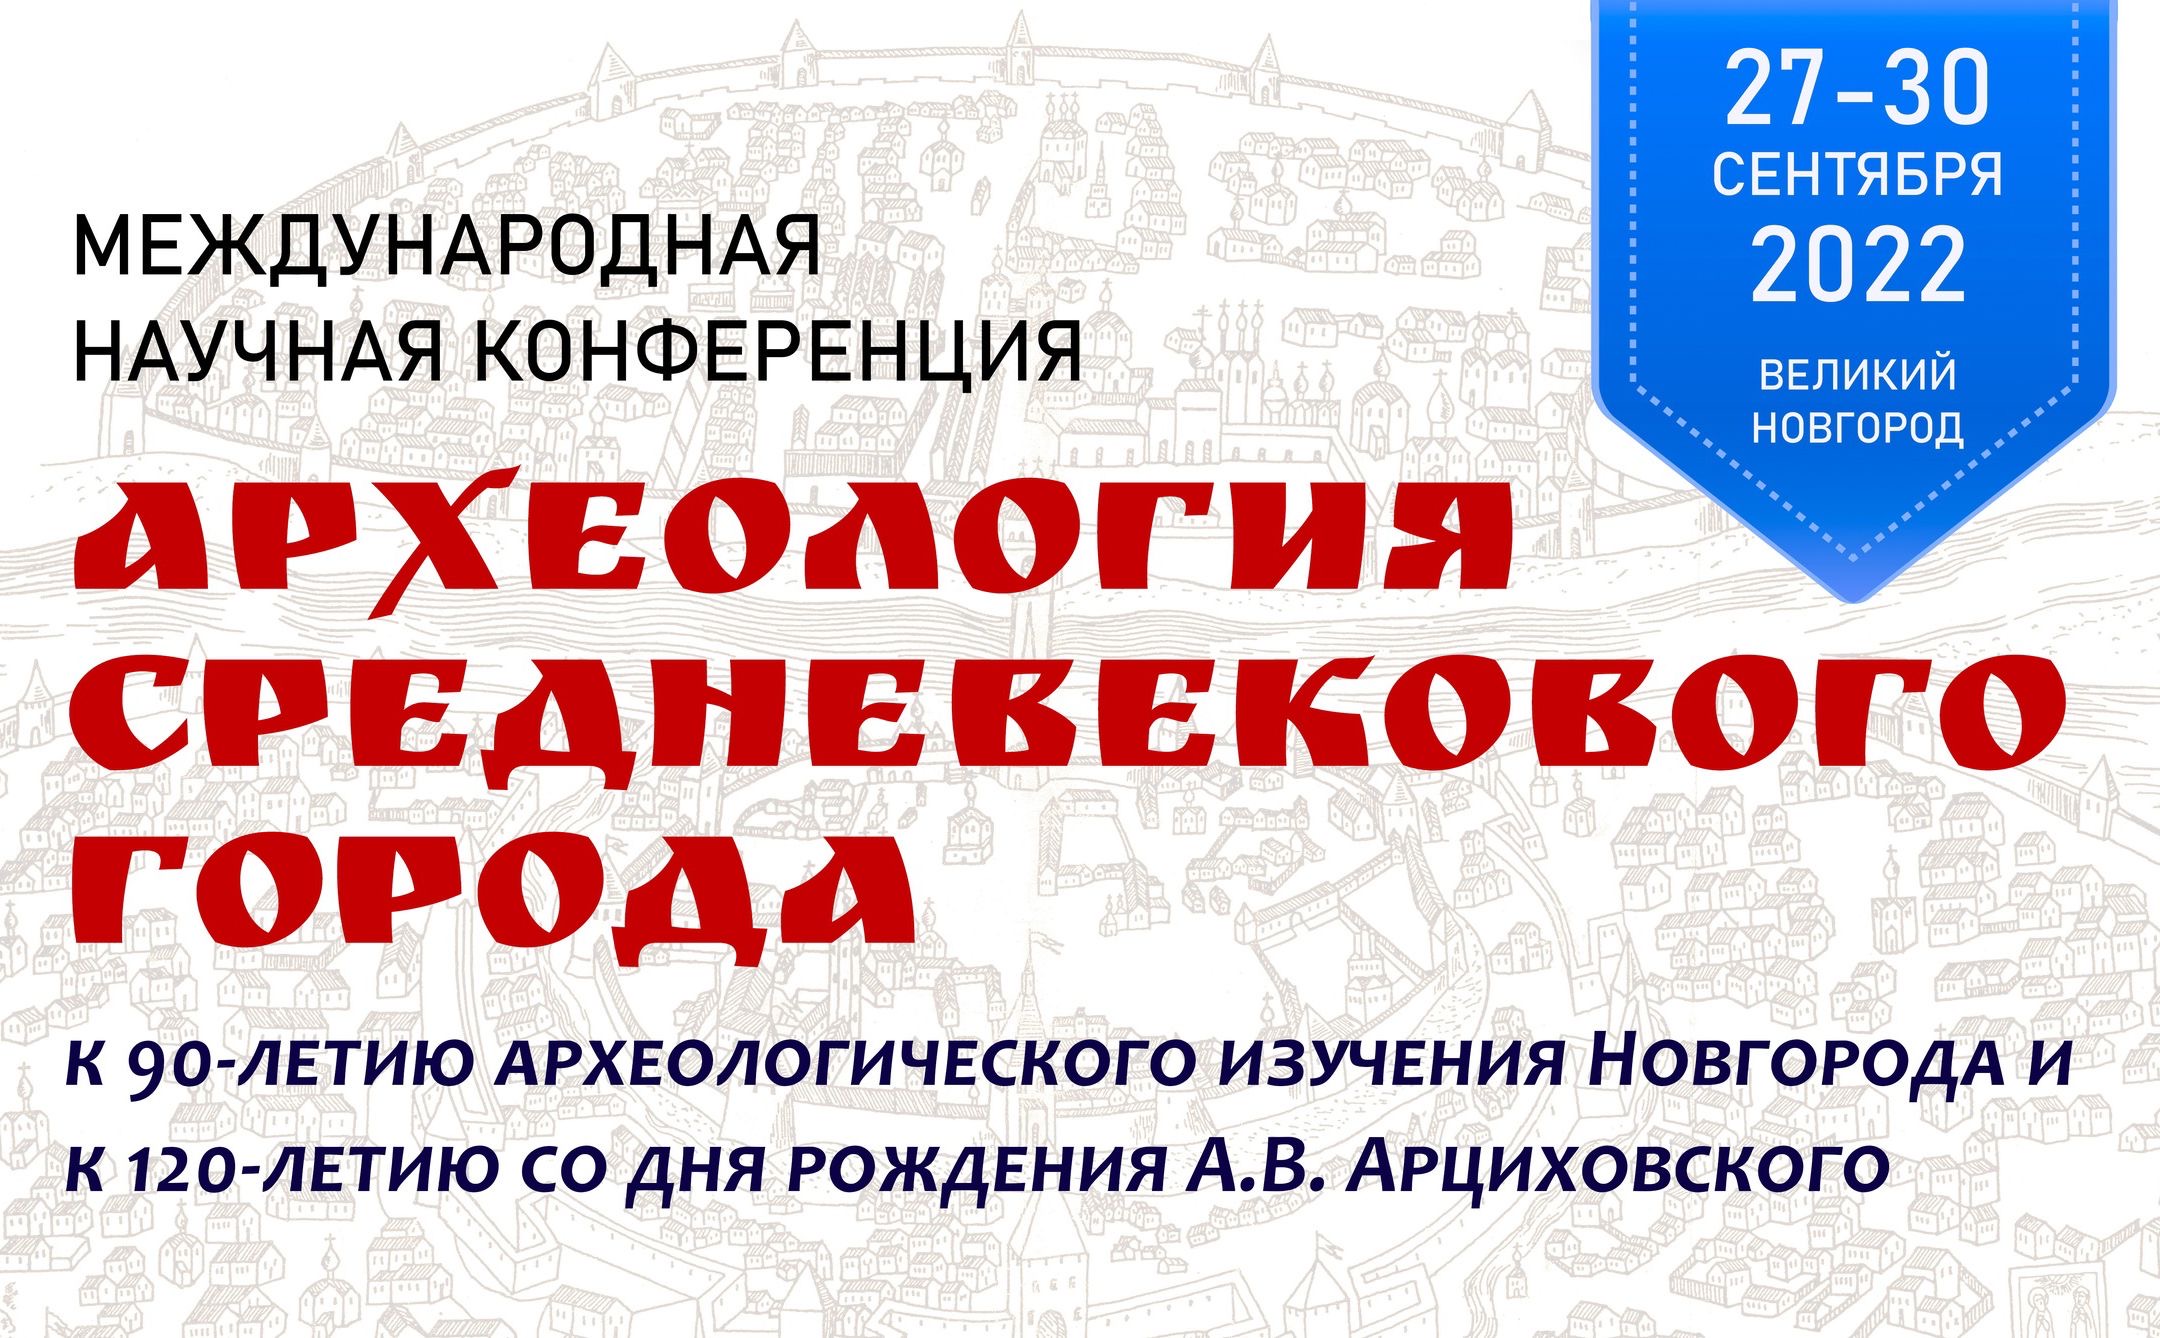 Конференции "Археология средневекового города"